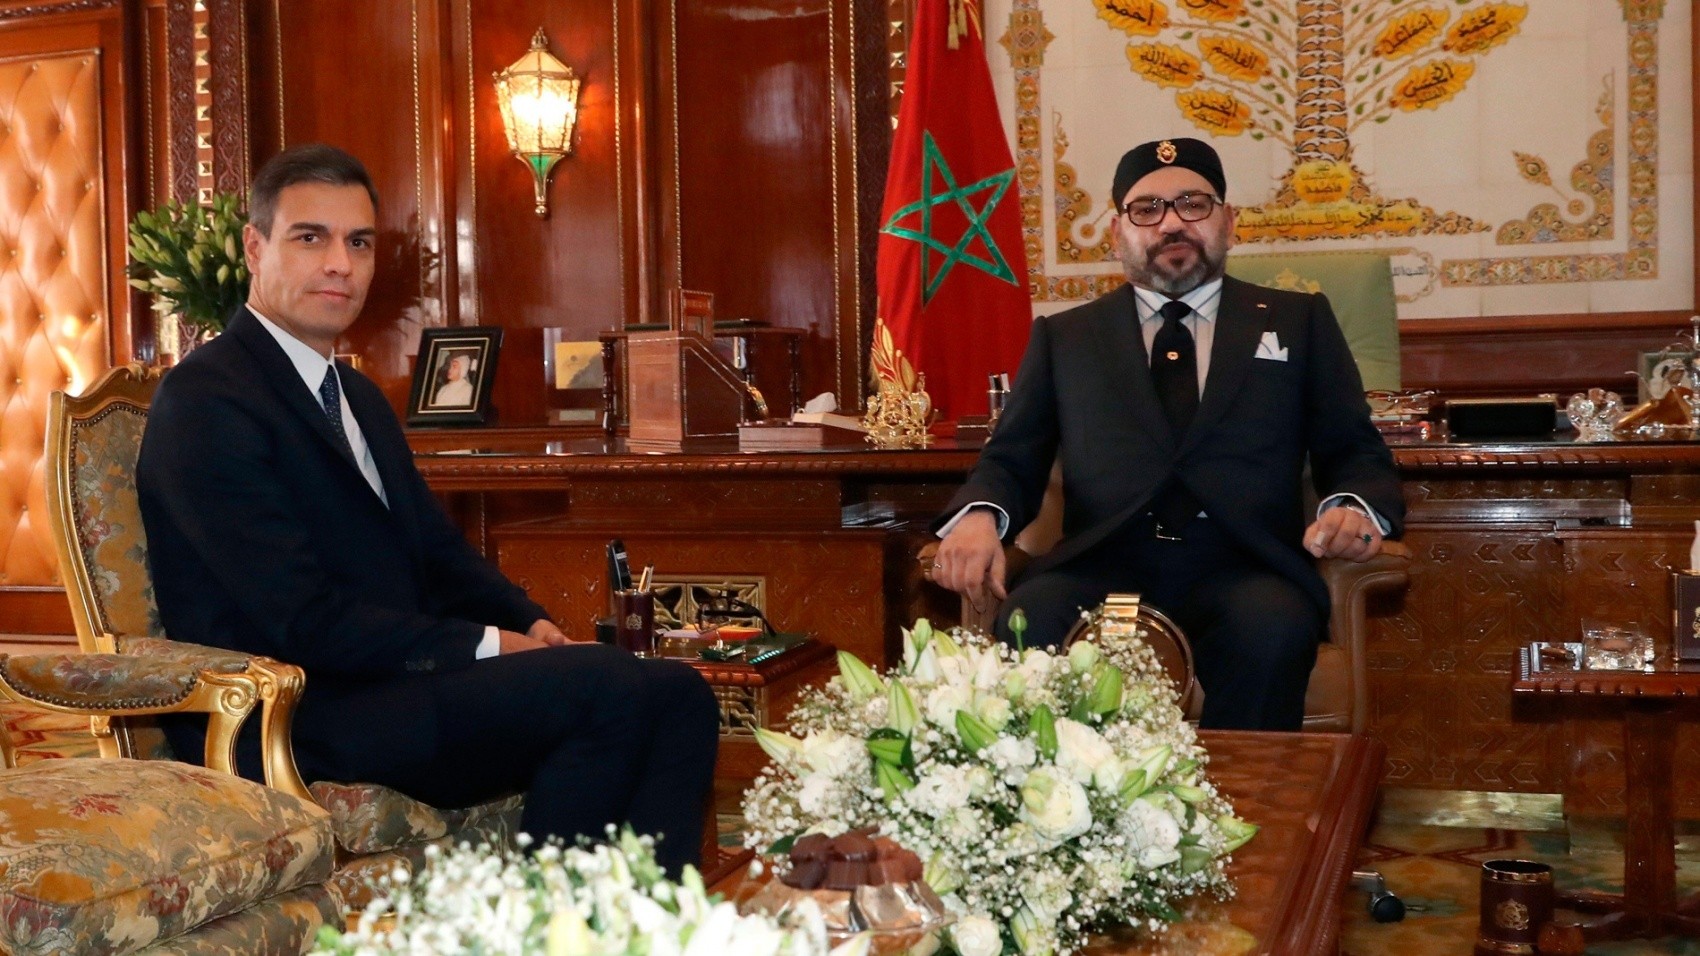 L’Espagne répond favorablement  aux exigences marocaines dans le dossier du Sahara marocain